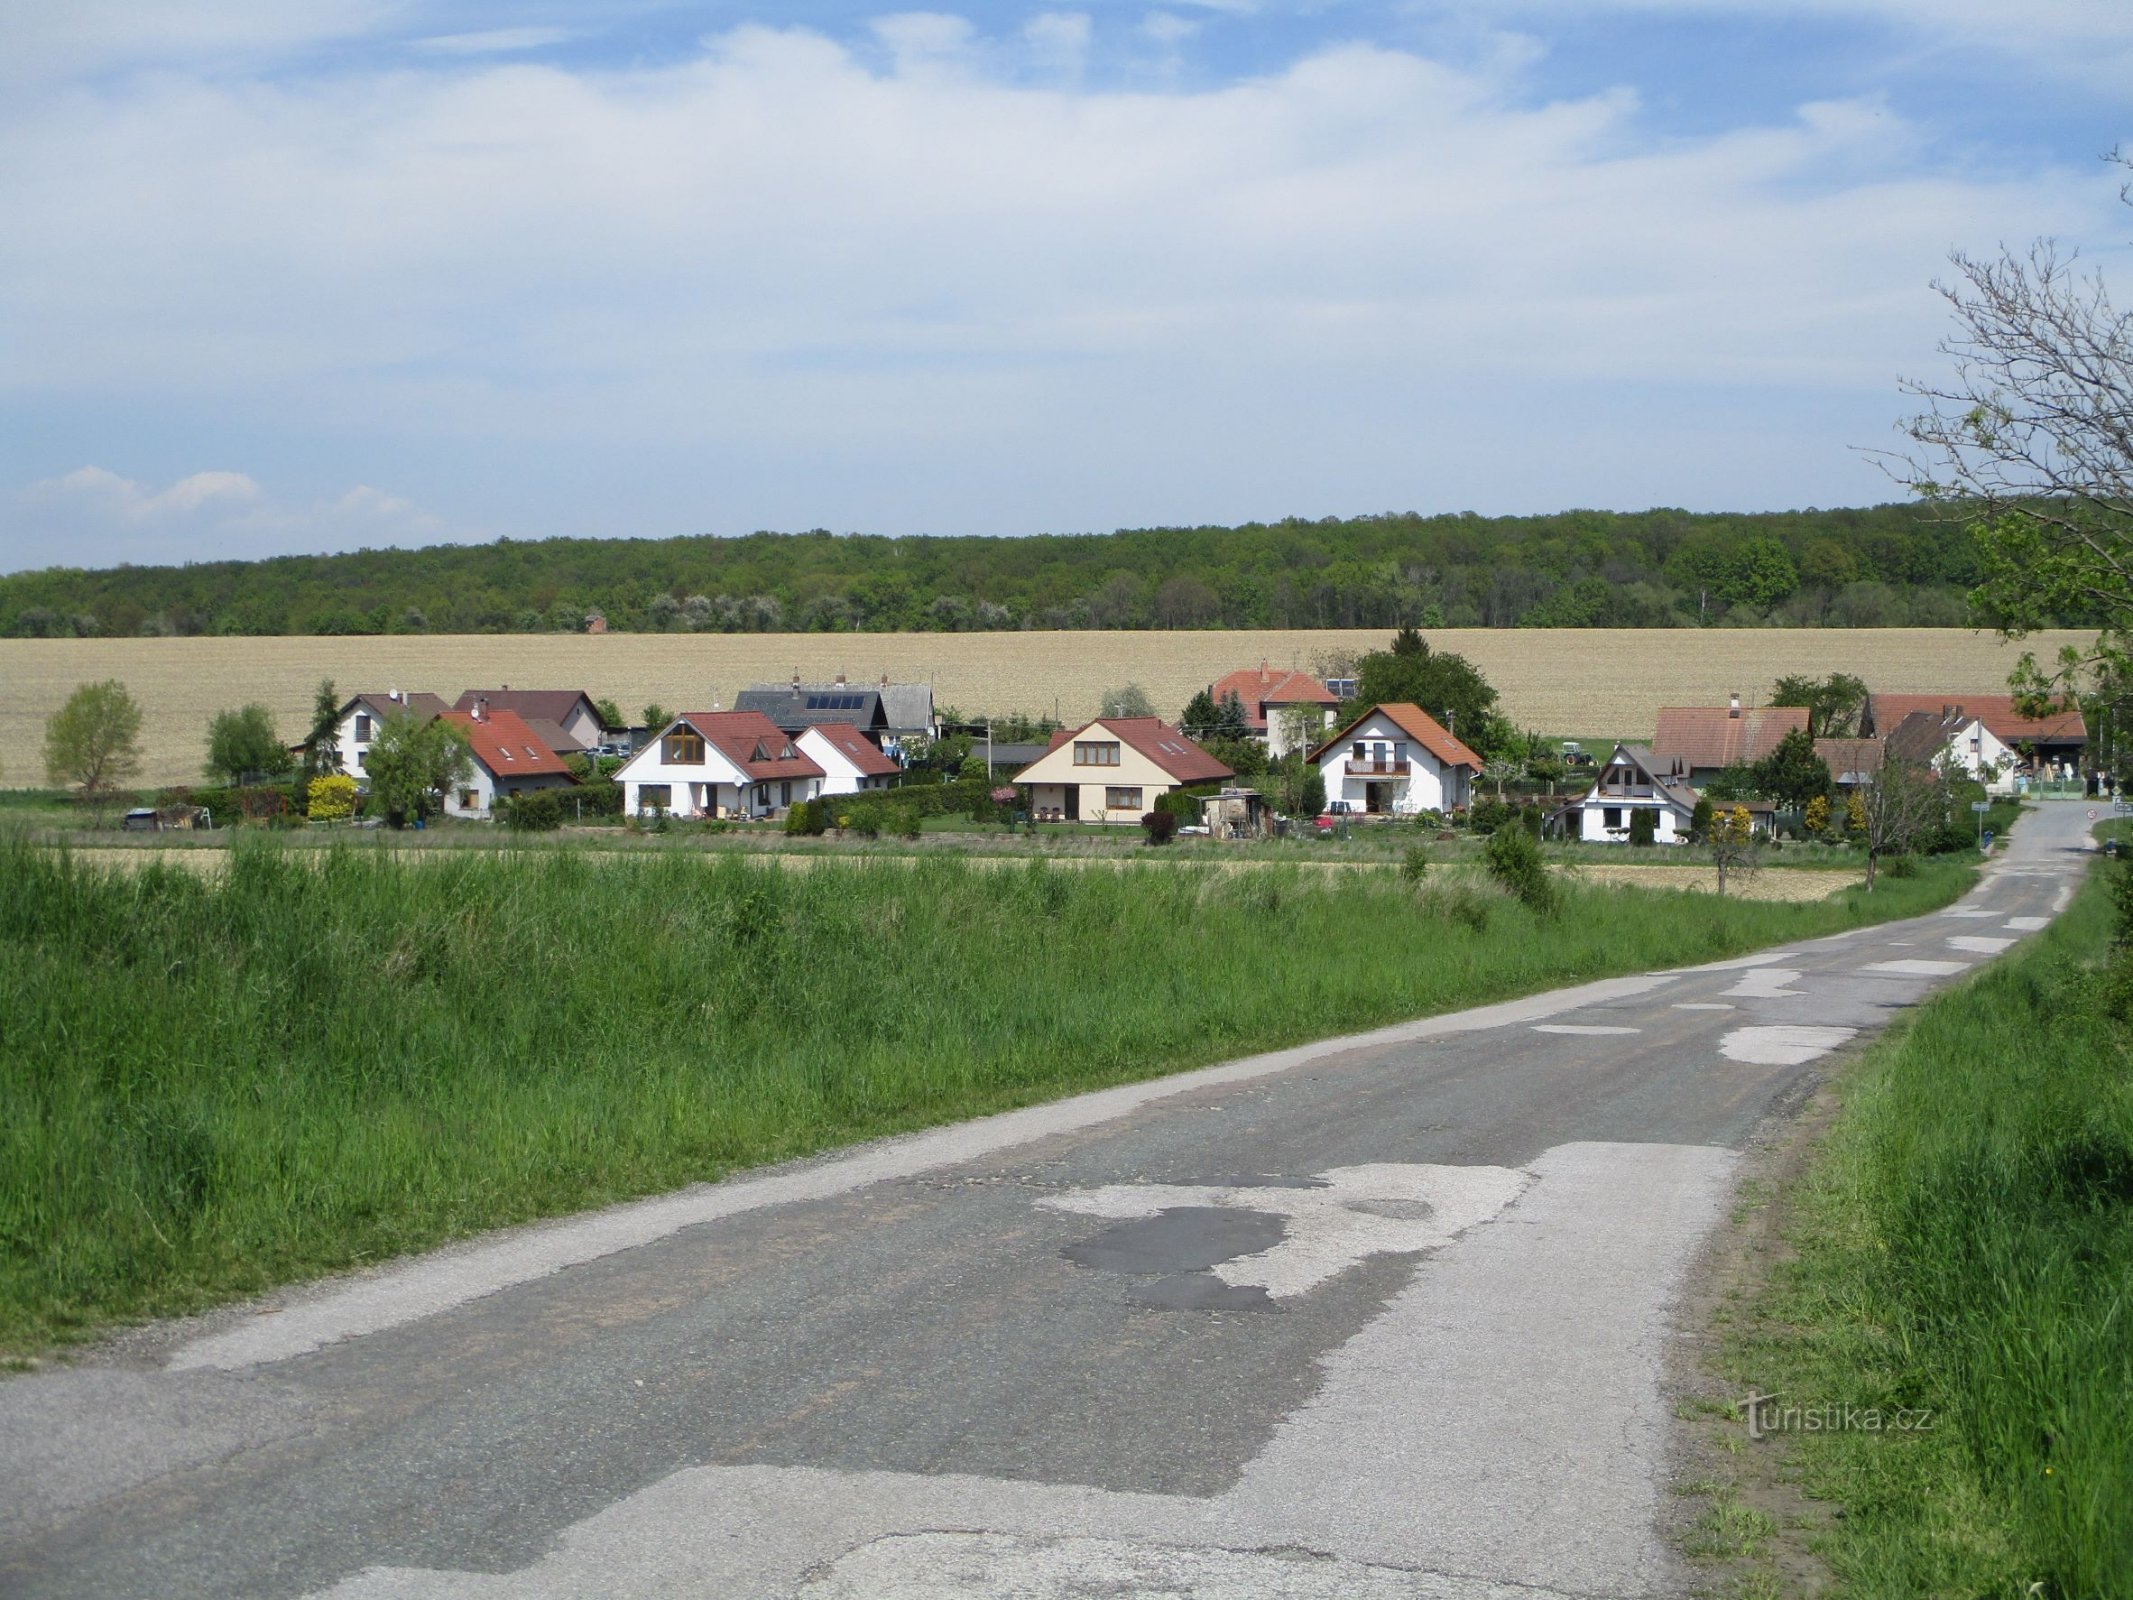 Čisteves från vägen från Horní Dohalice (8.5.2020/XNUMX/XNUMX)